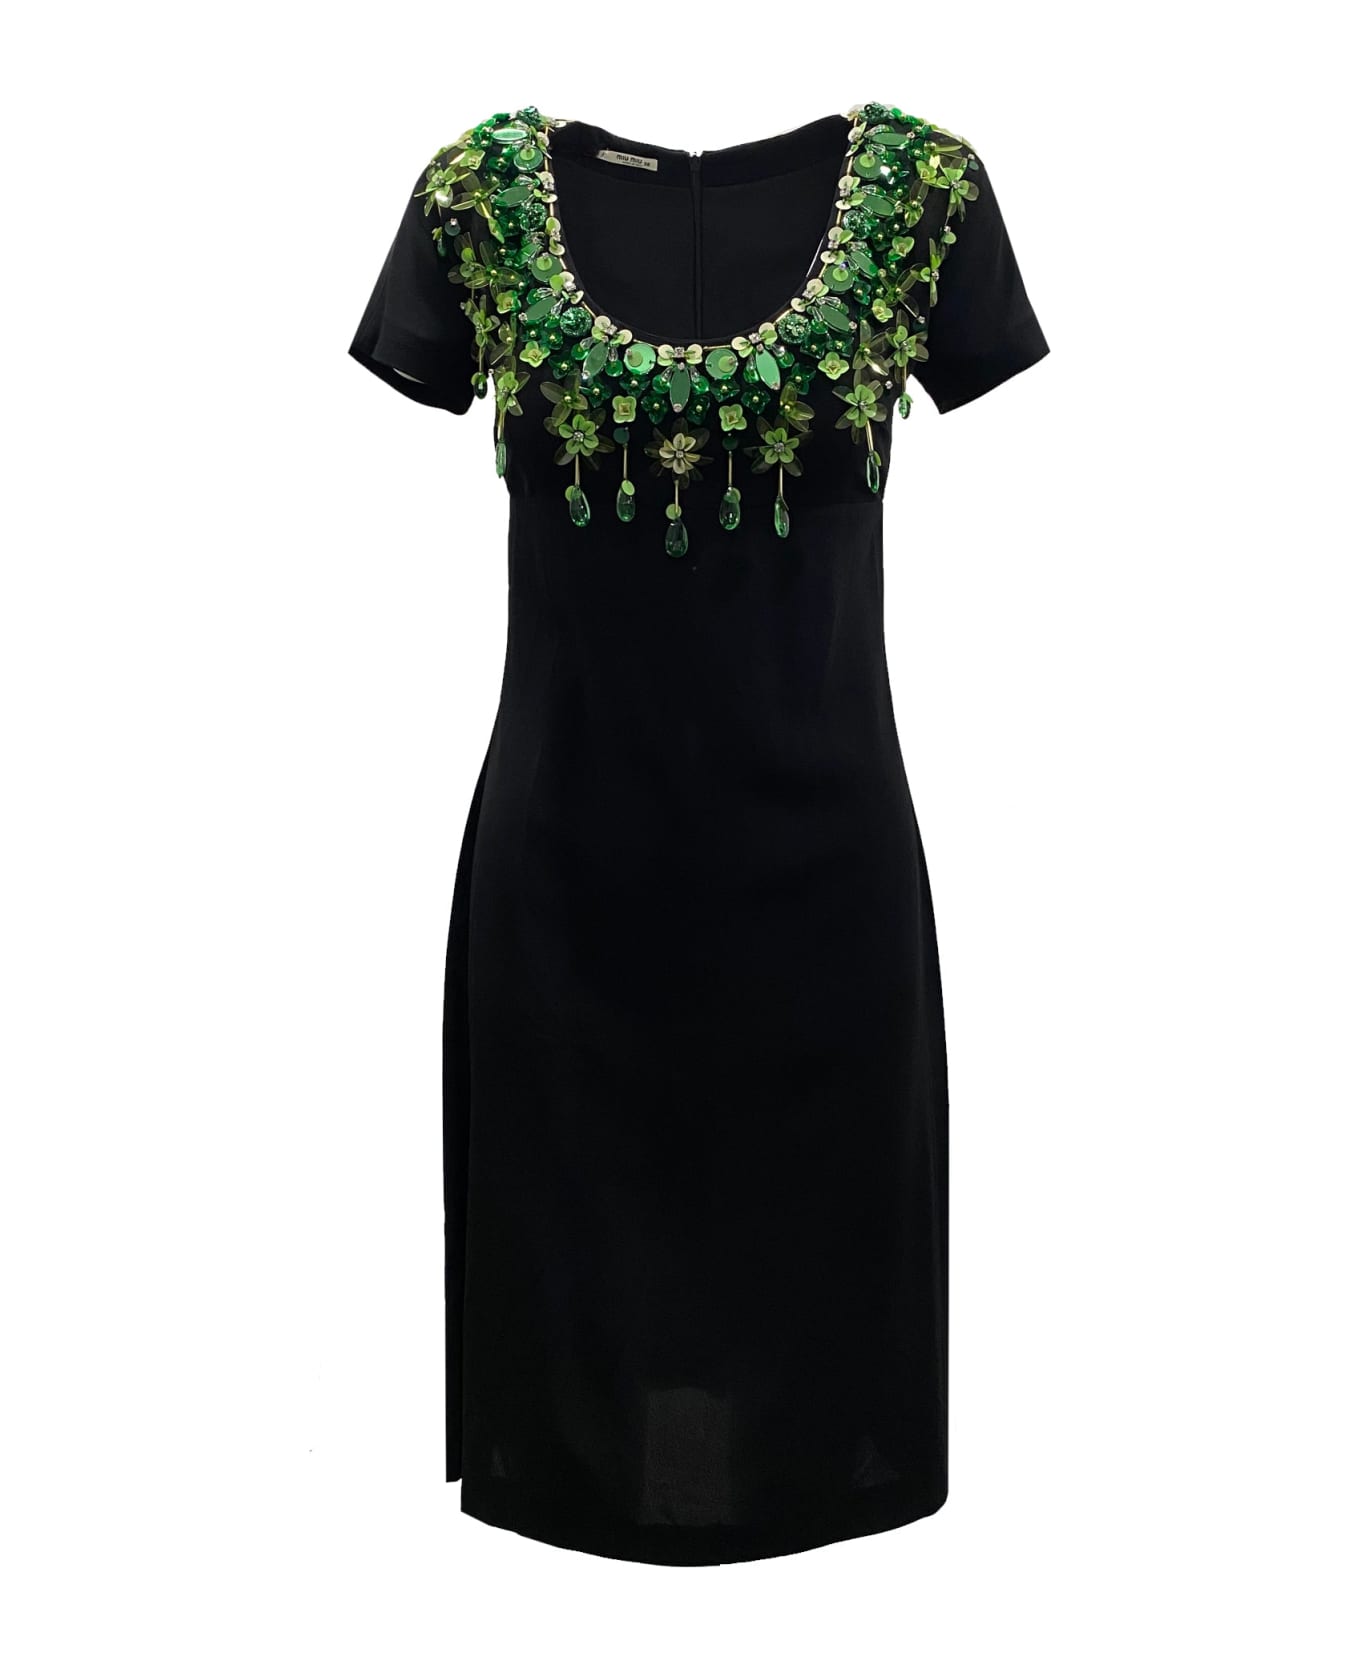 Miu Miu Floral Embellished Dress - Black